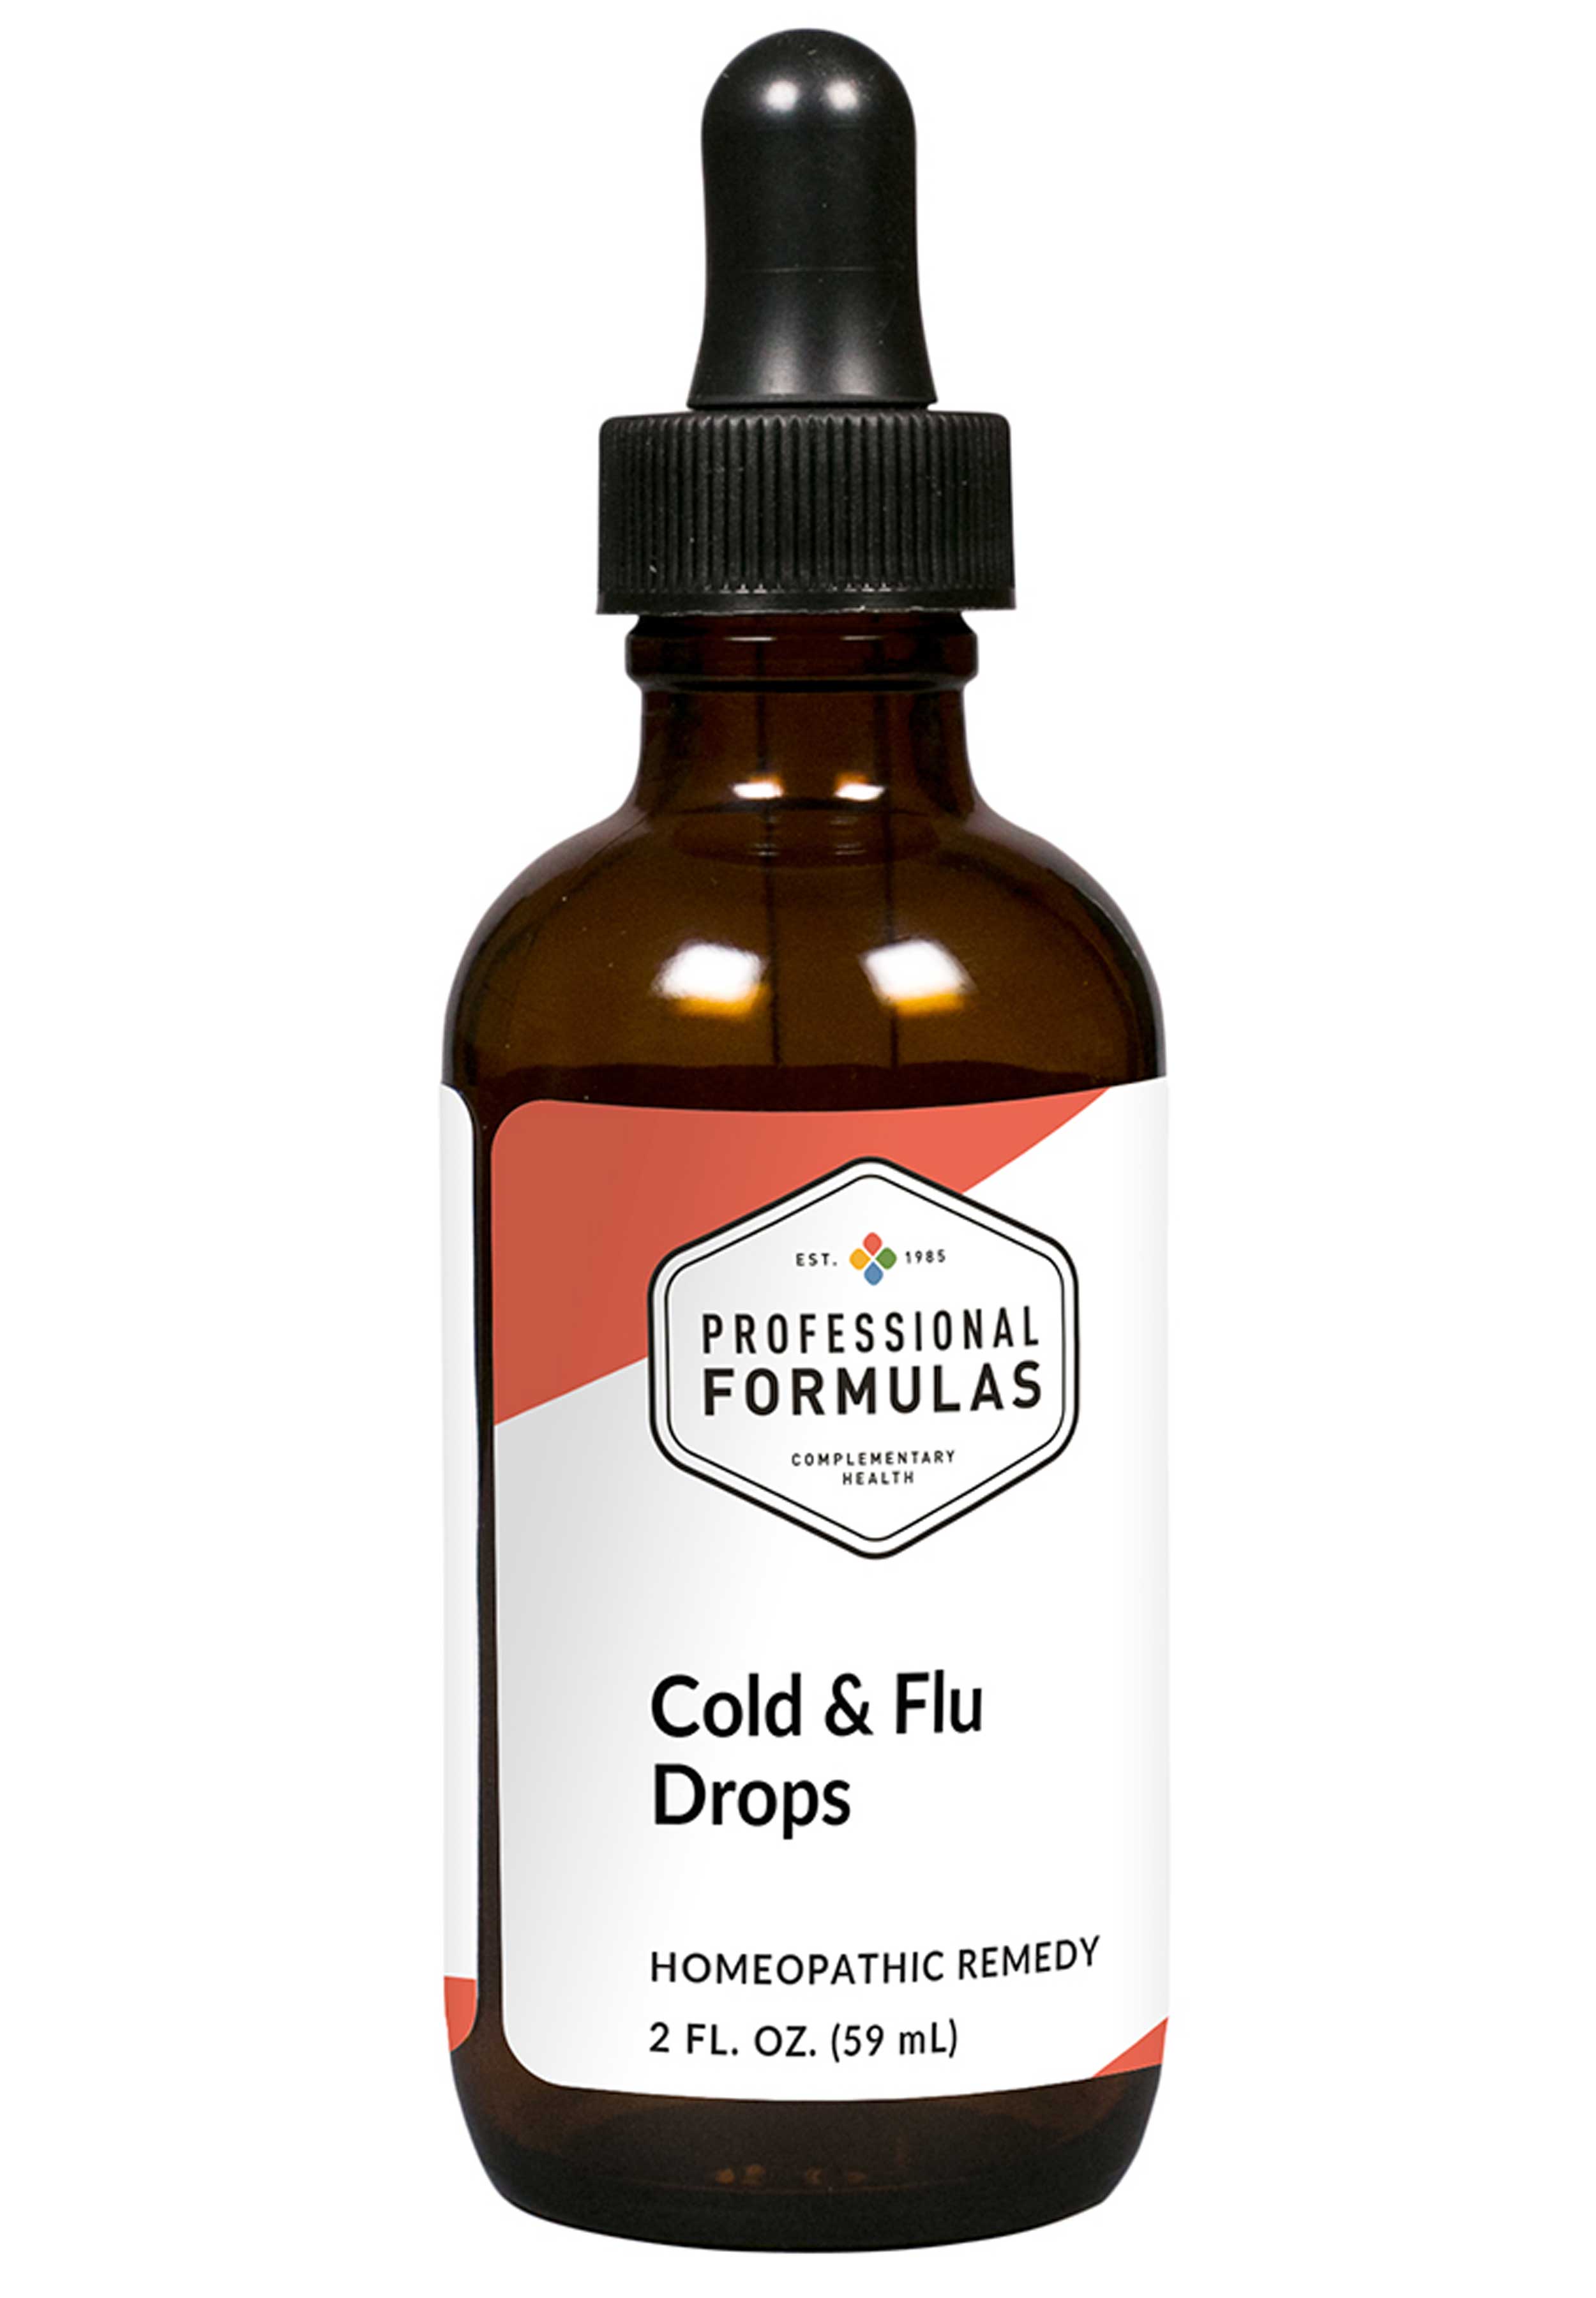 Professional Formulas Cold and Flu Drops